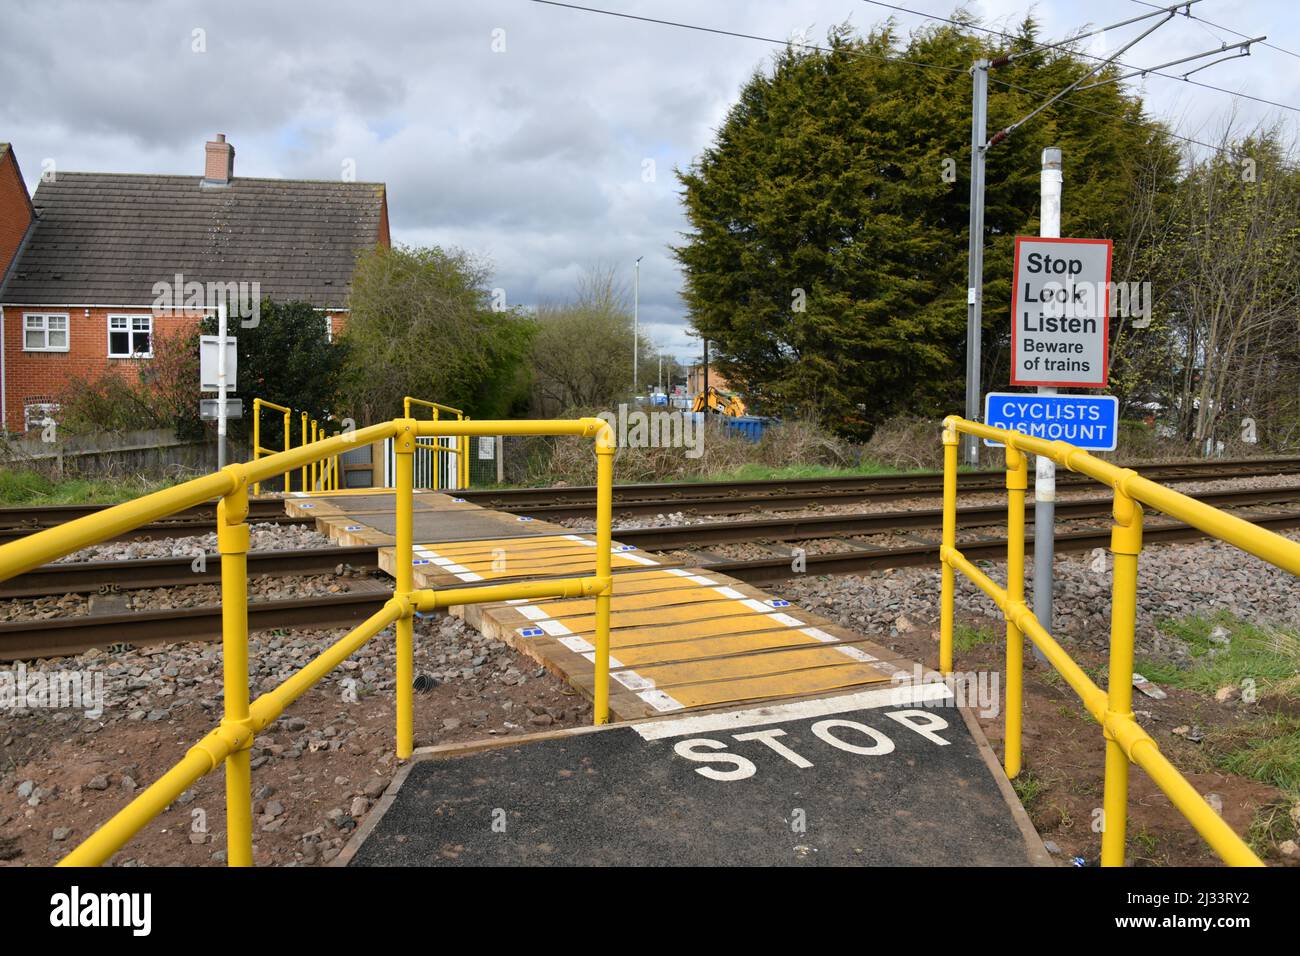 Traversée de pied de chemin de fer britannique typique avec des rails de protection haute visibilité et des panneaux d'avertissement de sécurité Banque D'Images